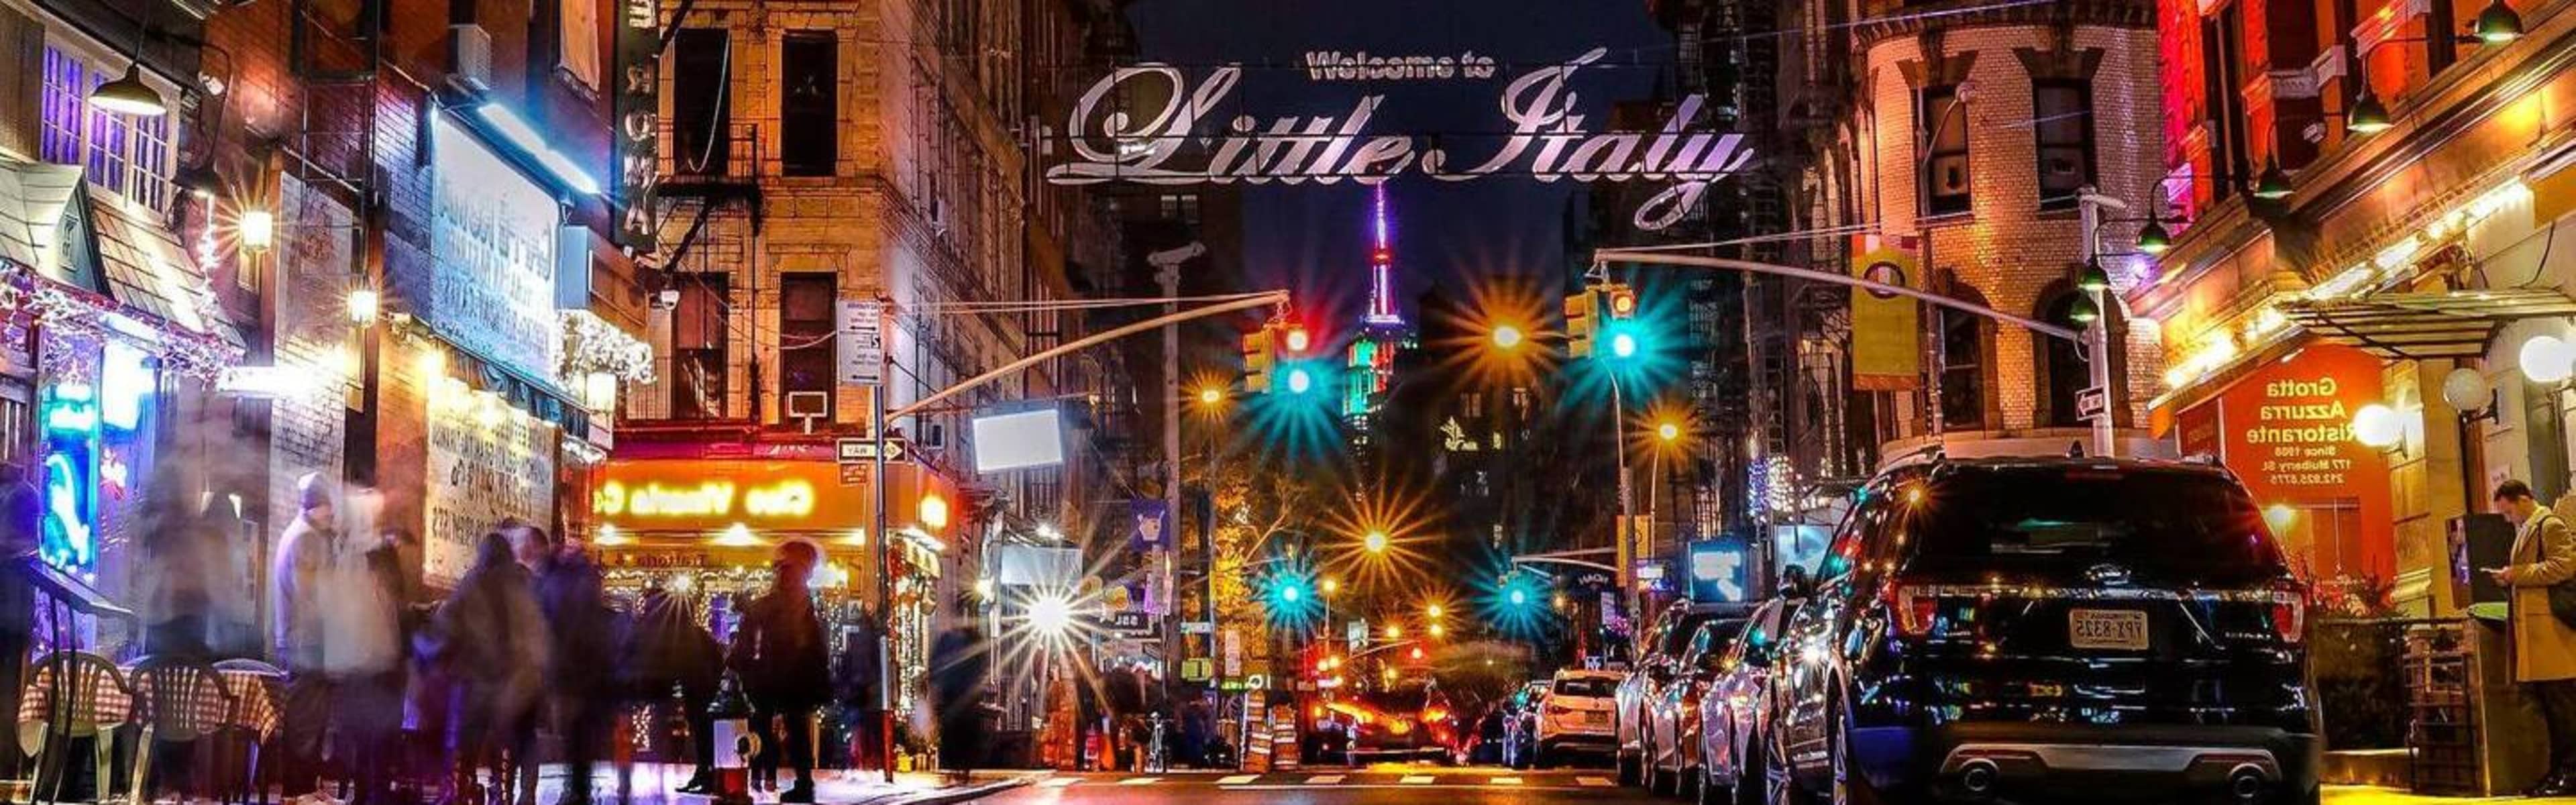 Little Italy in Manhattan.